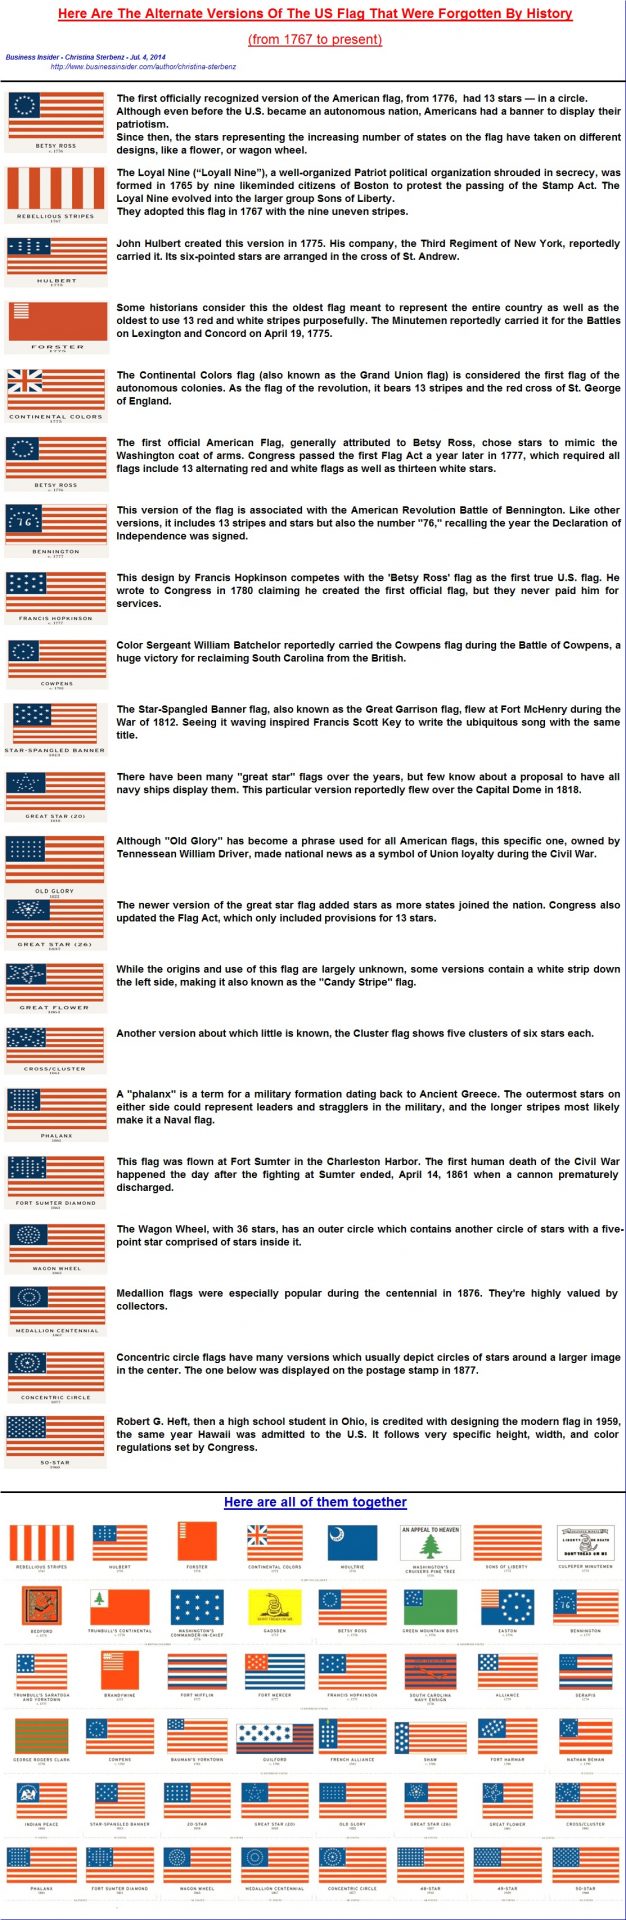 Tout savoir sur le drapeau des États-Unis : signification